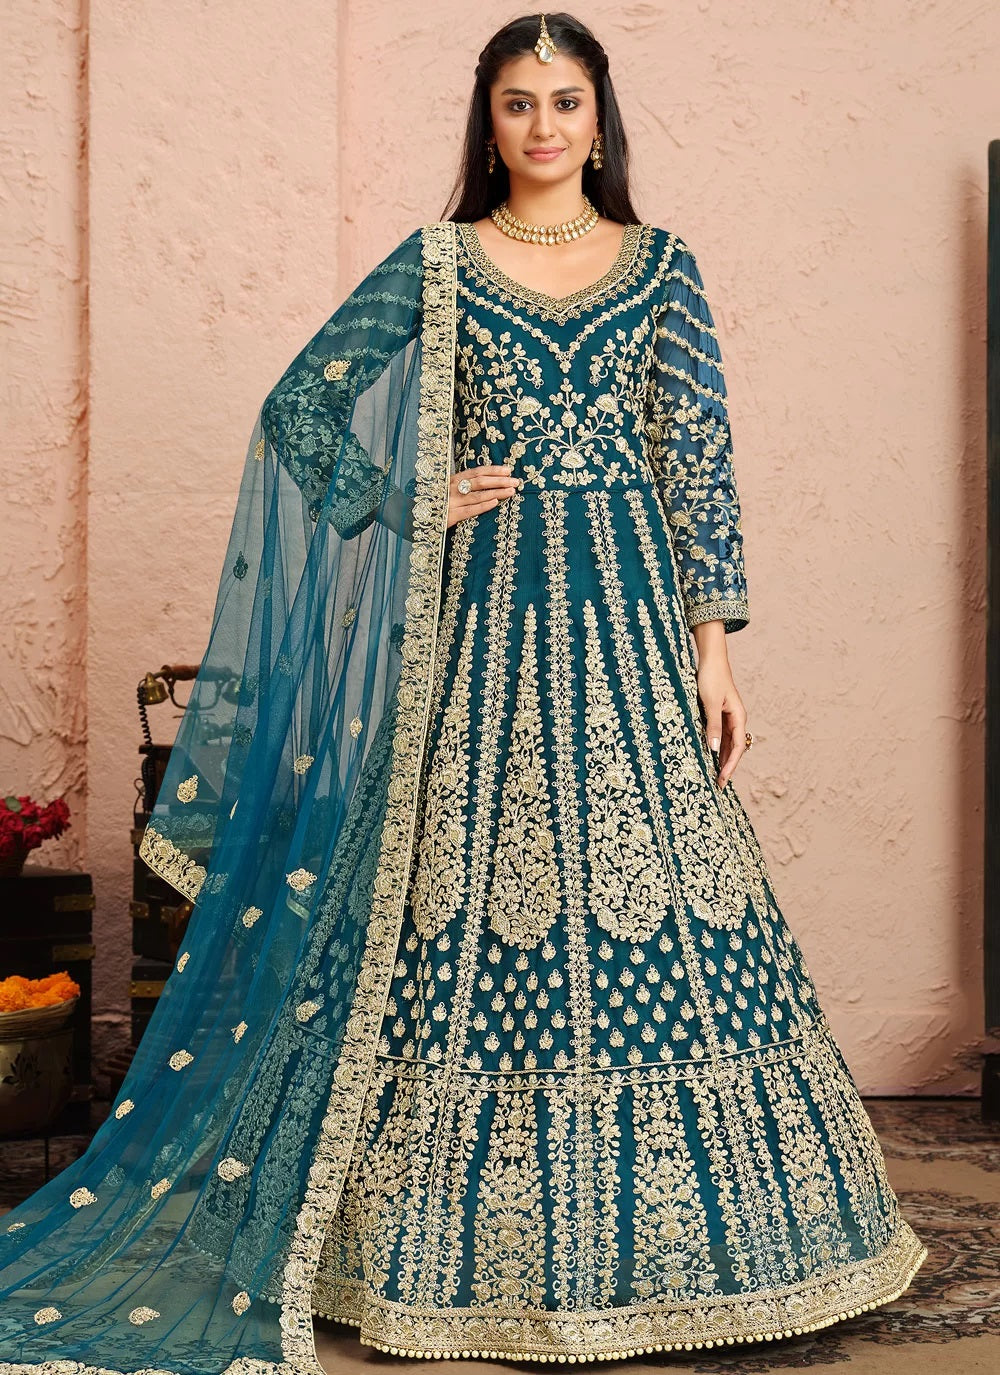 Bella Fancy Dresses Net Salwar Suit Blue Embroidered Anarkali Suit